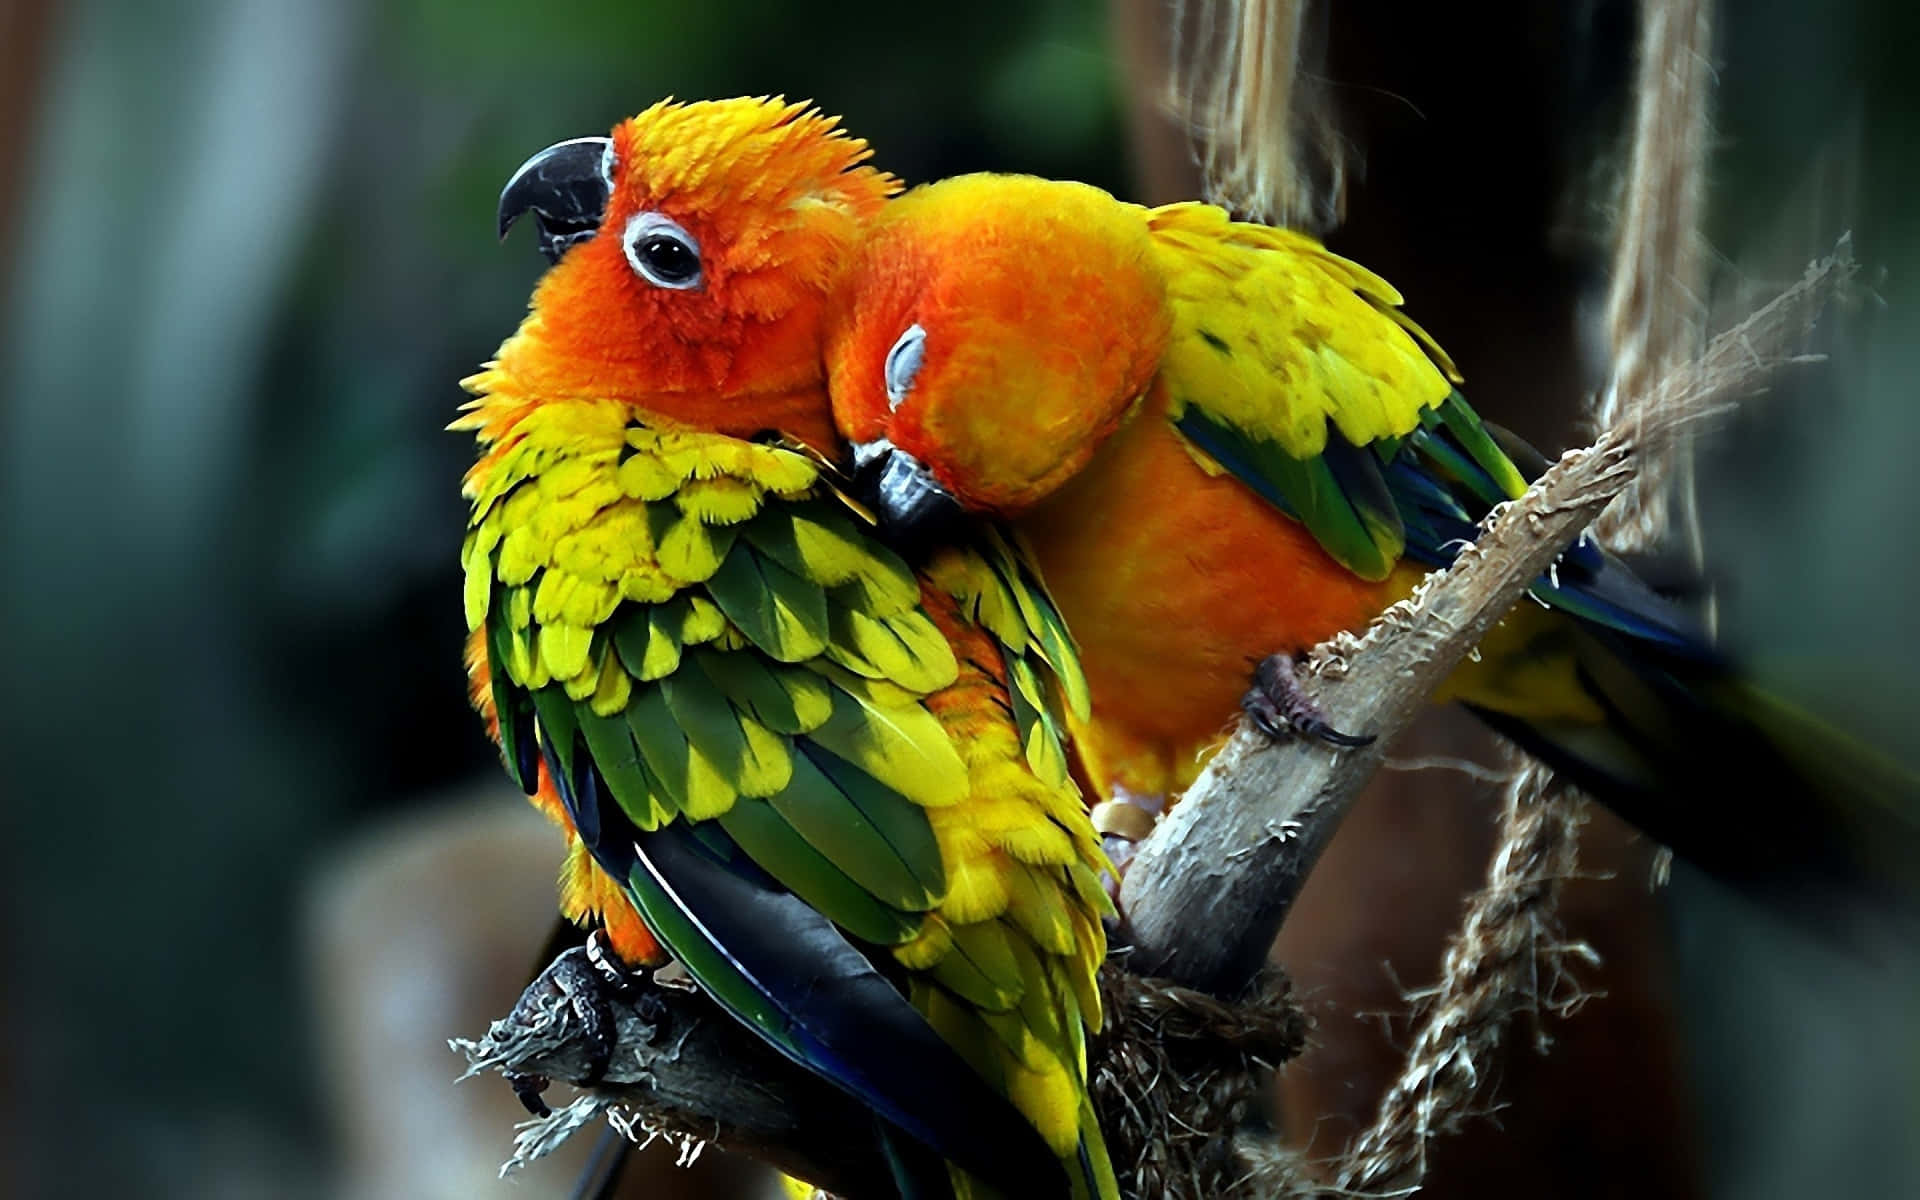 Einwunderschönes Symbol Der Liebe, Dargestellt Durch Diese Zwei Liebesvögel!